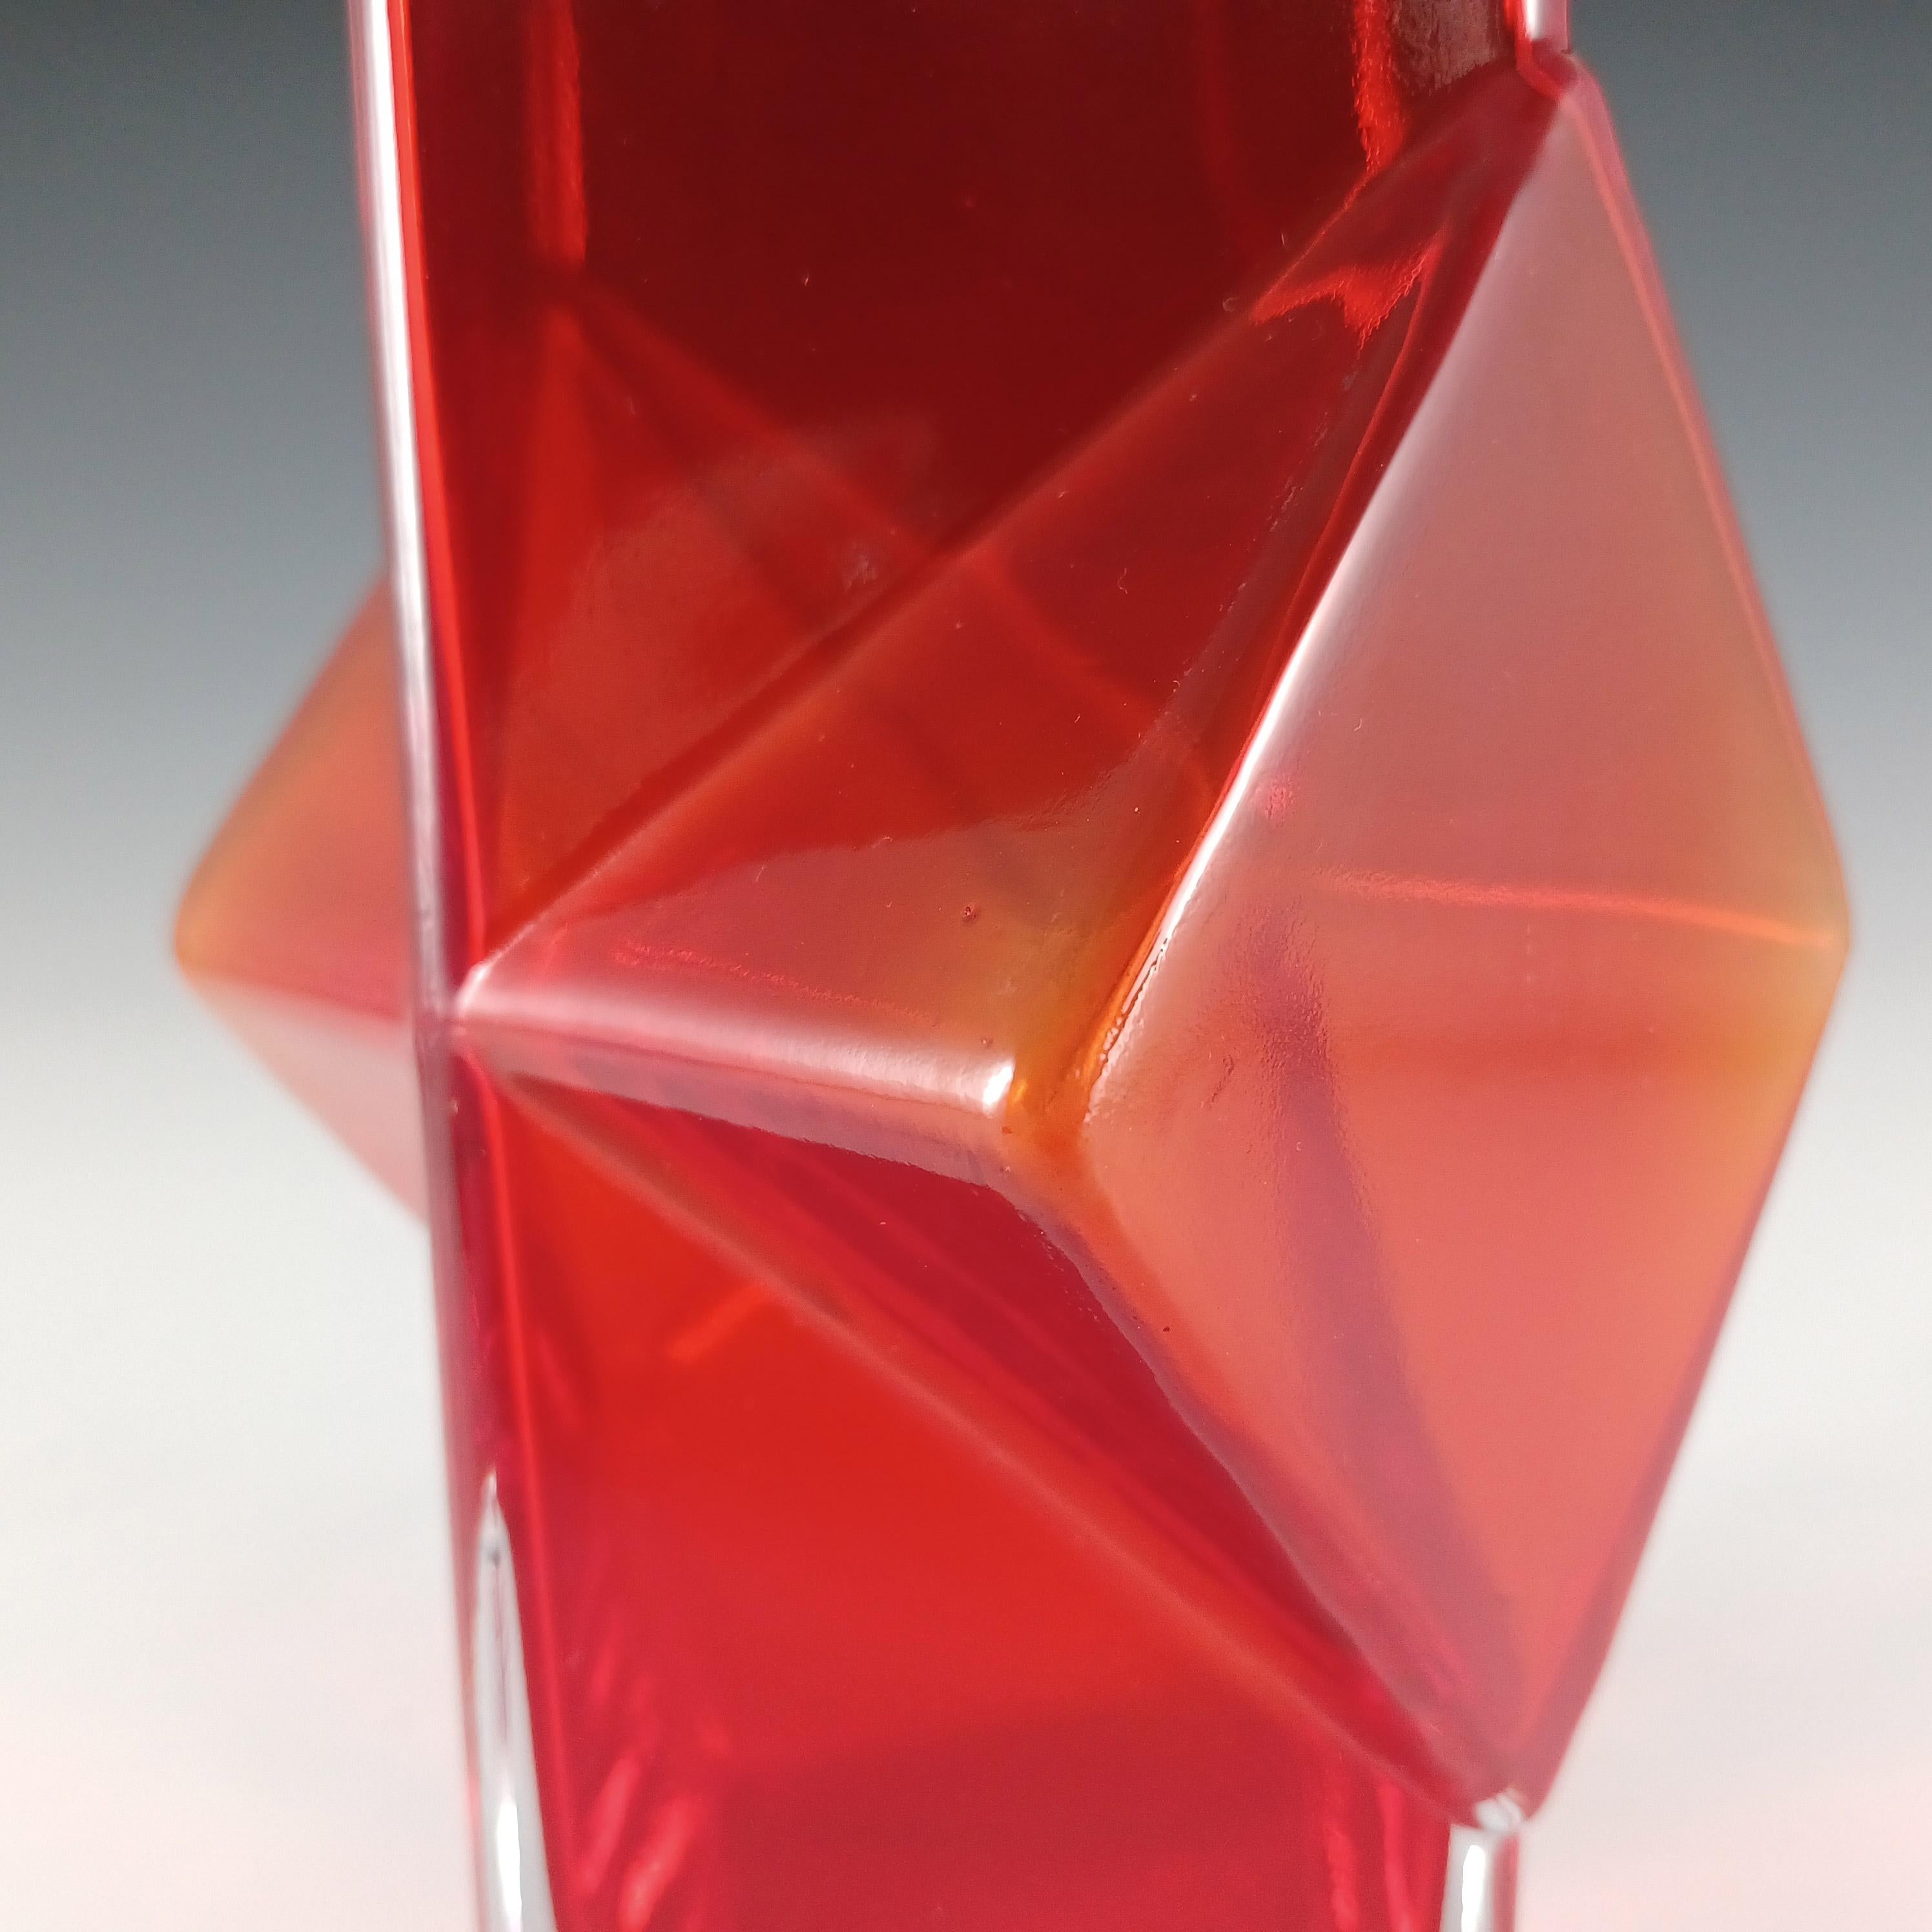 Late 20th Century Riihimaki #1388 Erkkitapio Siiroinen Red Glass Pablo Vase For Sale